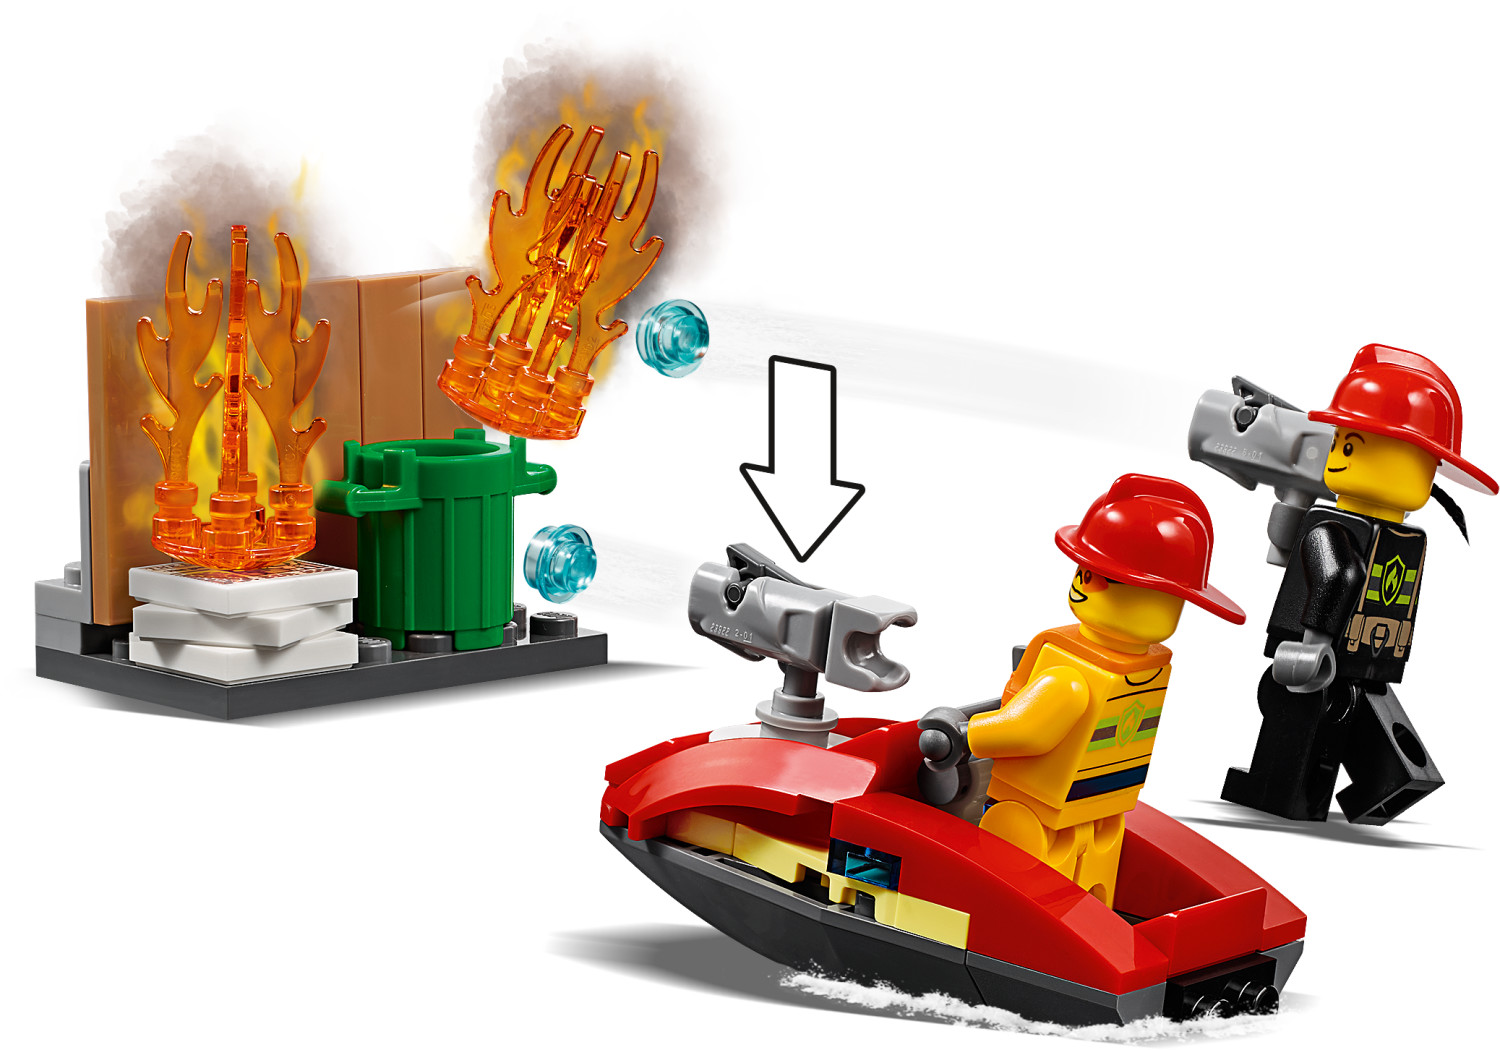 LEGO City - Caserma dei Pompieri (60215) a € 99,99 (oggi)